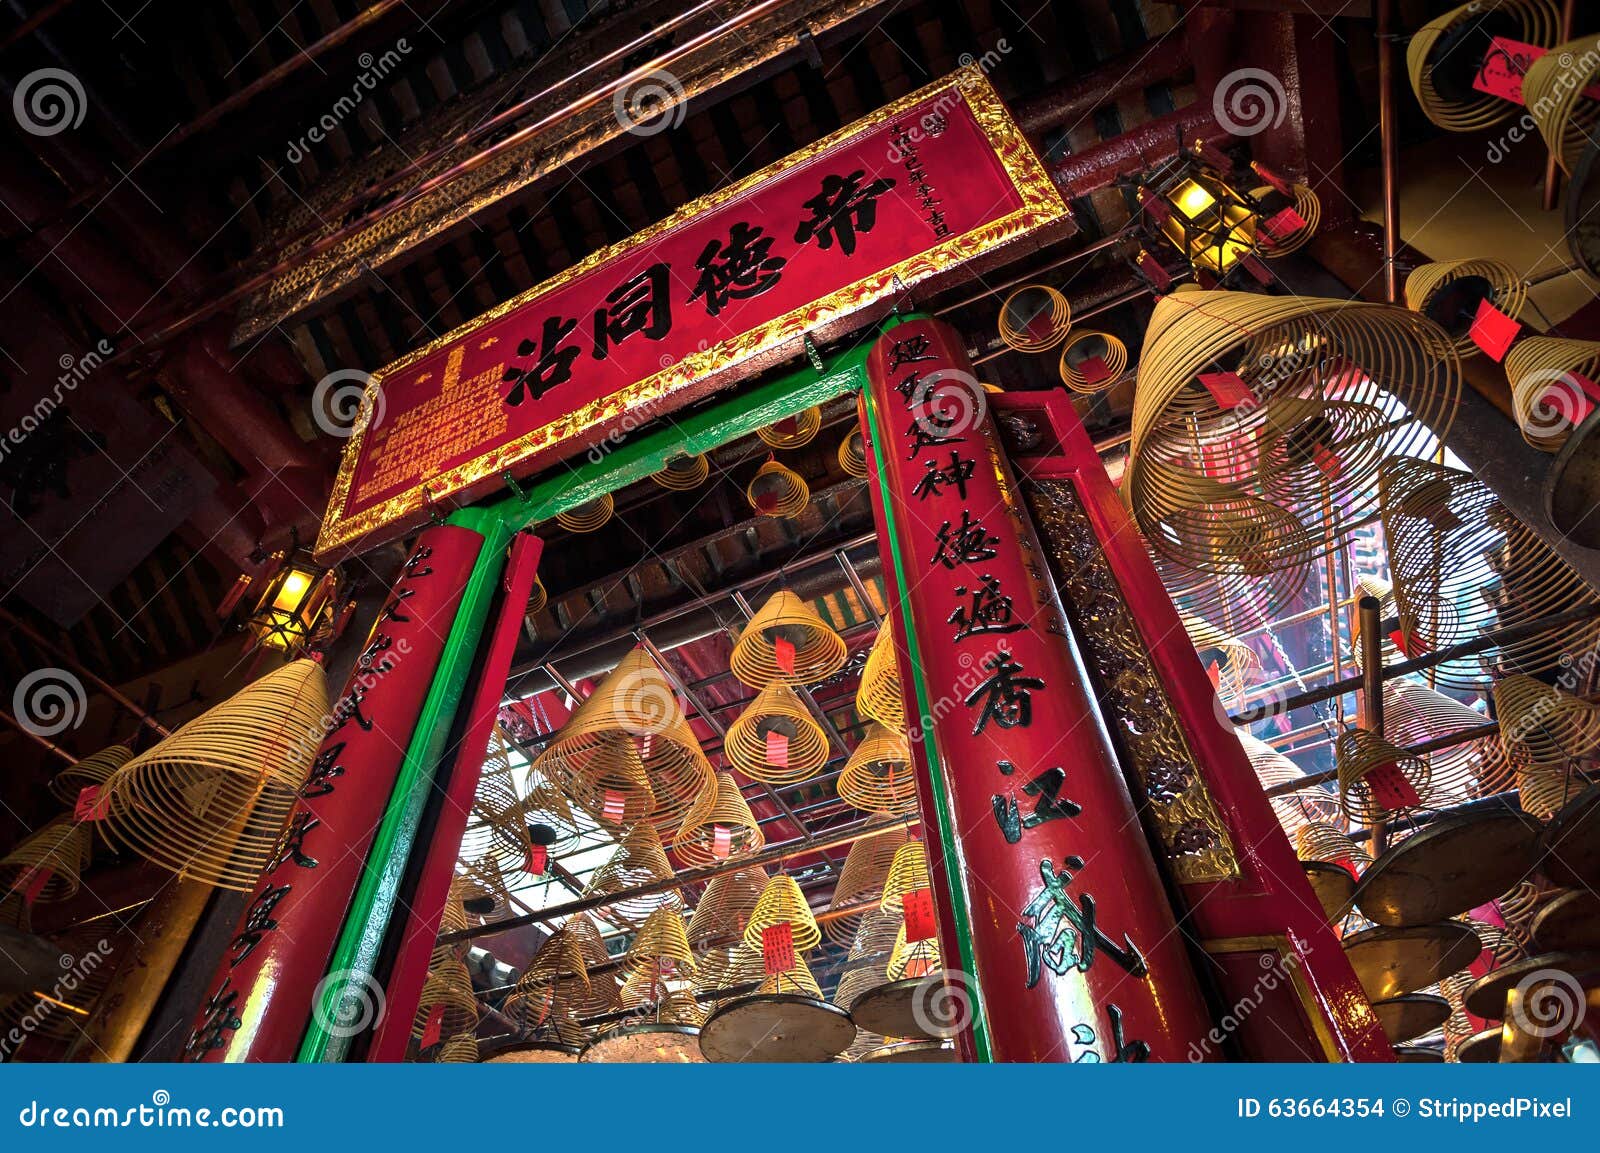 man mo temple interior, sheung wan, hong kong